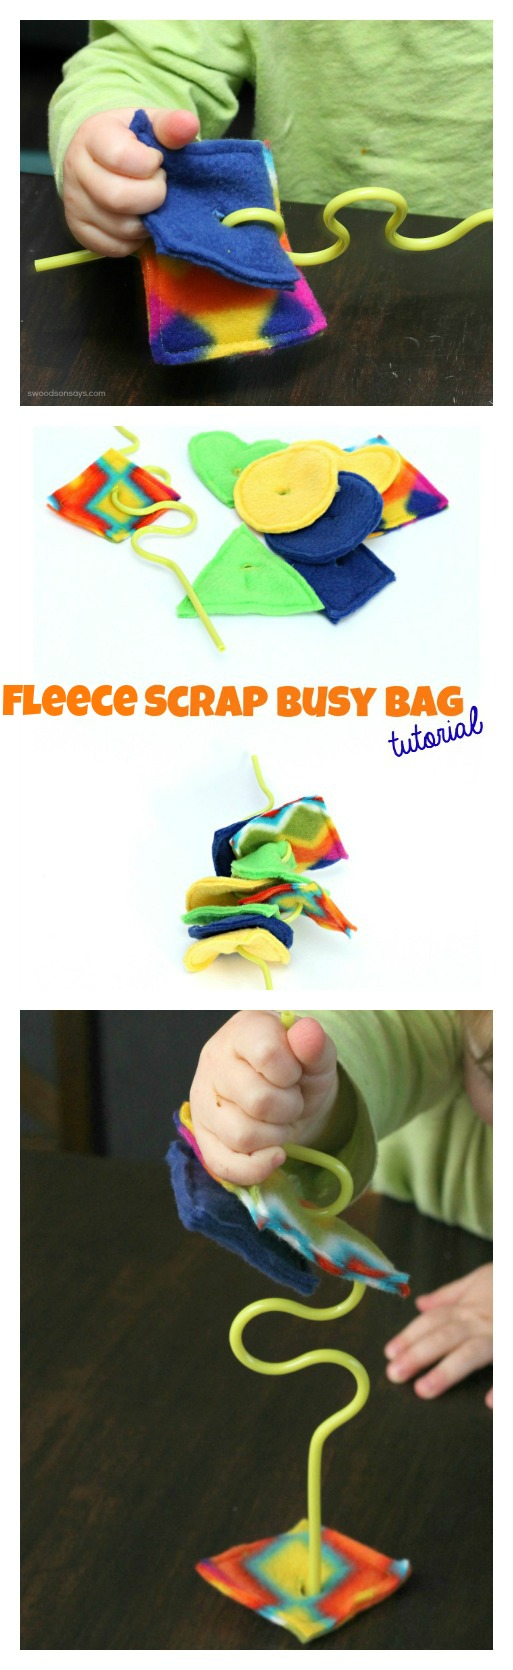 Fleece Scrap Busy Bag DIY